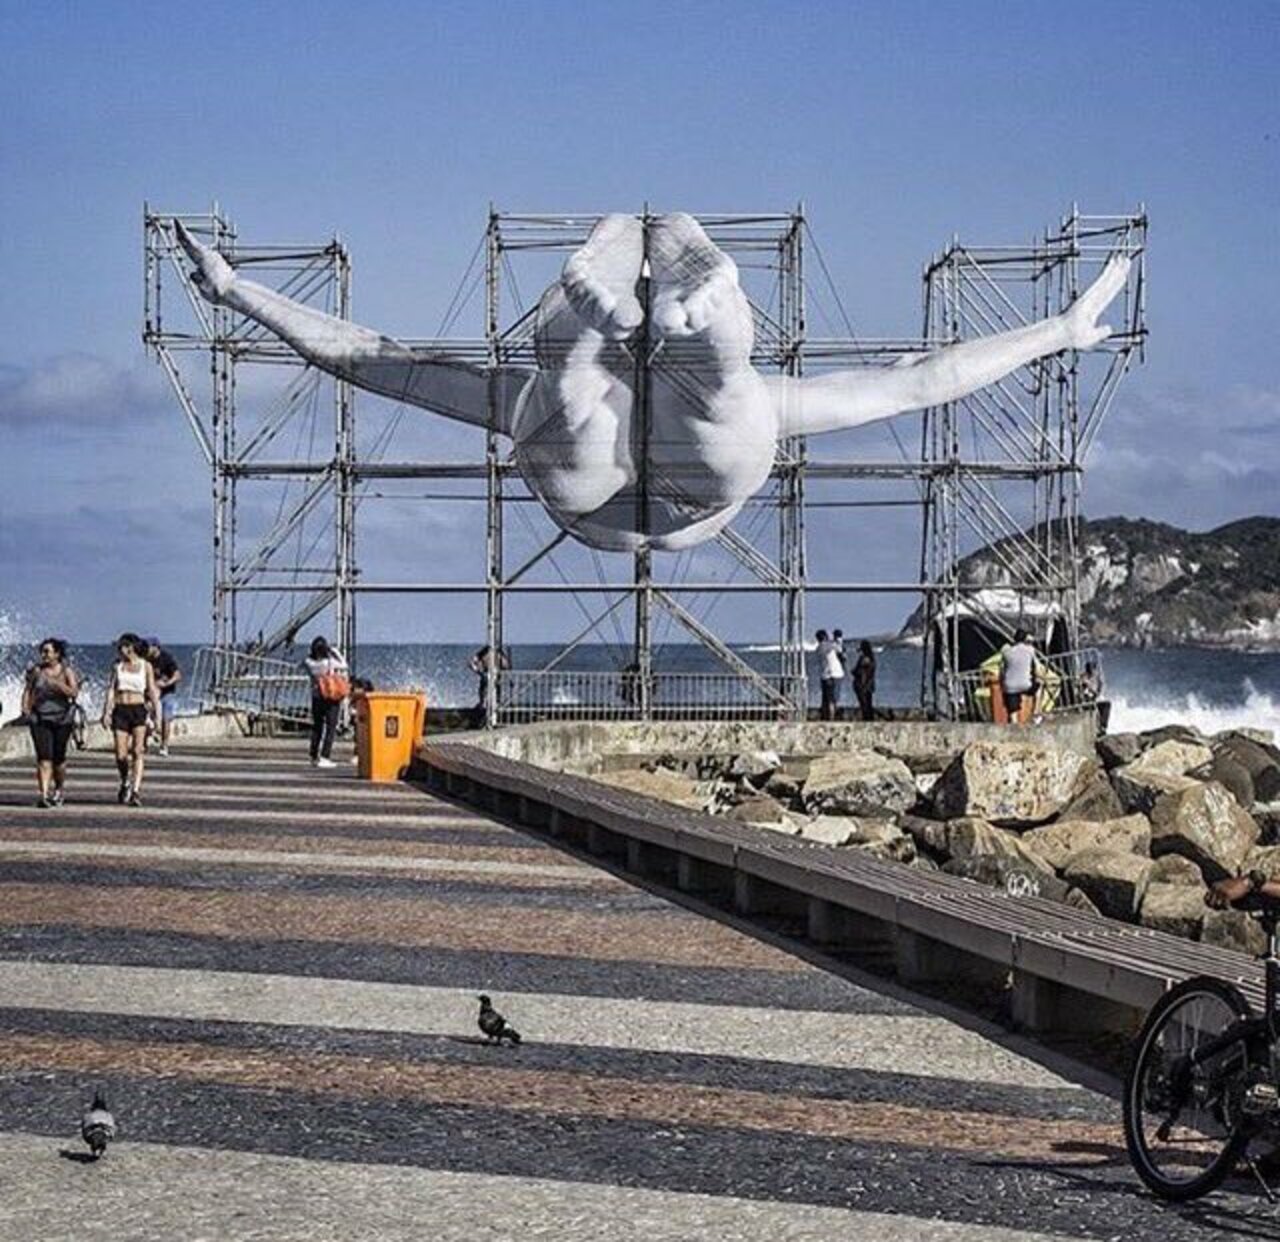 New 3D art installation by JR Rio de Janeiro #3dart #streetart #mural https://t.co/jNTu2Tjb8u